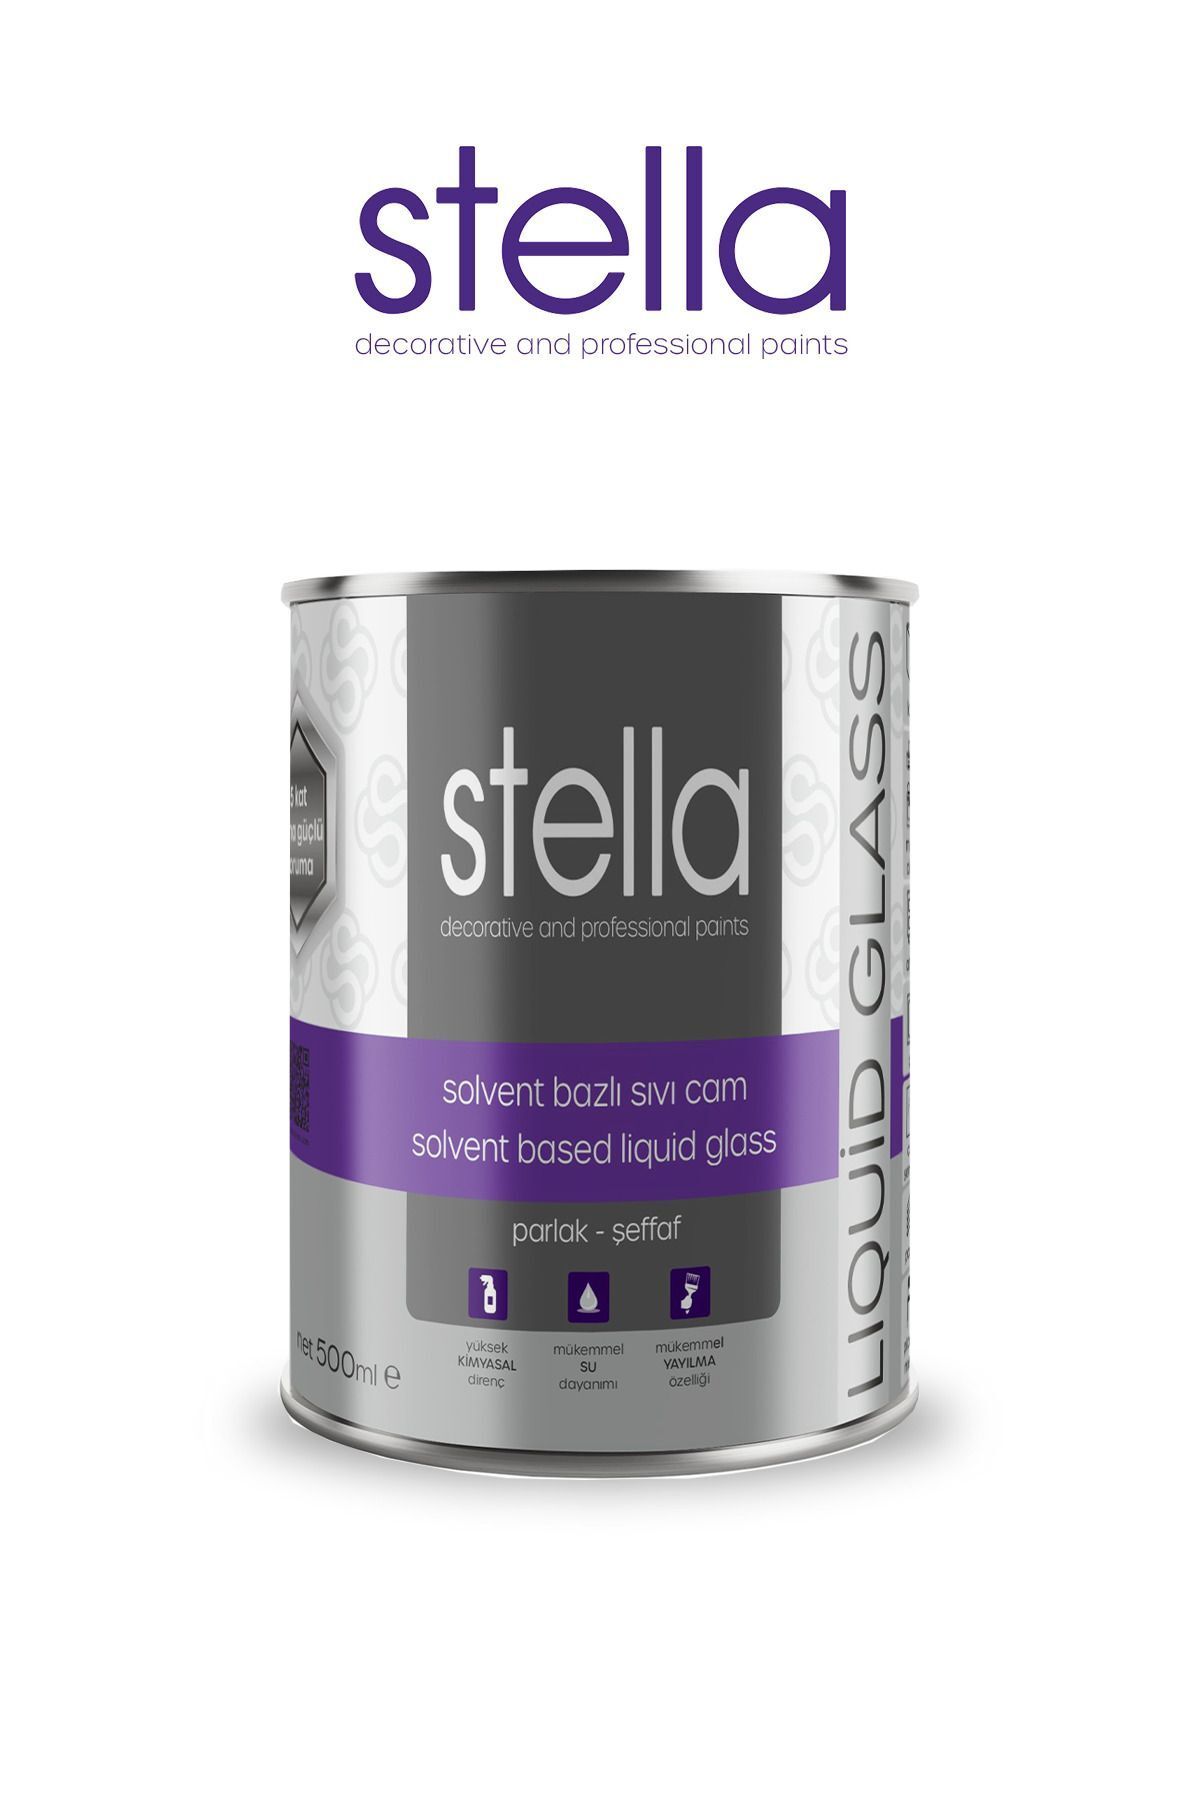 Stella sıvıcam solvent bazlı yalıtım boyası şeffaf